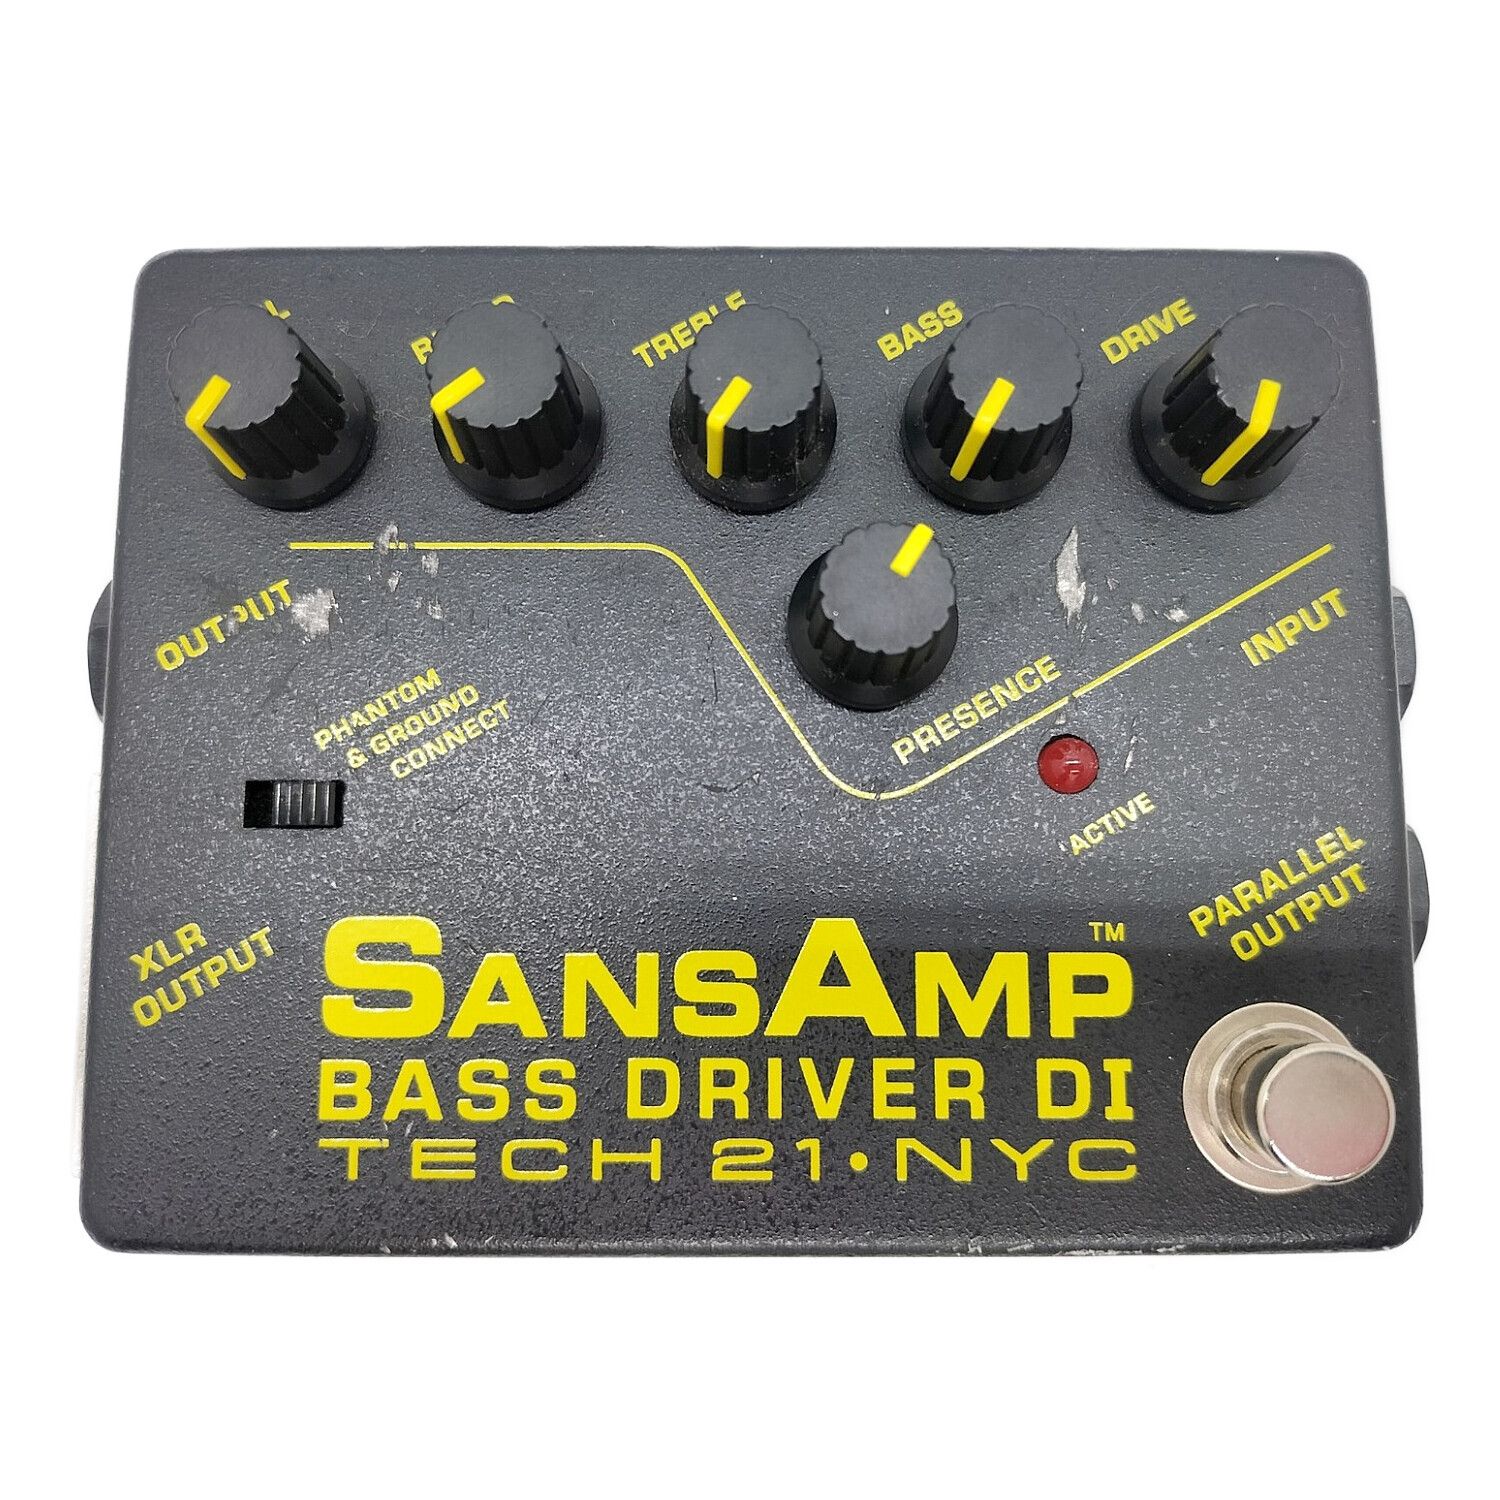 ご購入ください^^SANSAMP BASS DRIVER DI 初期型 サンズアンプ